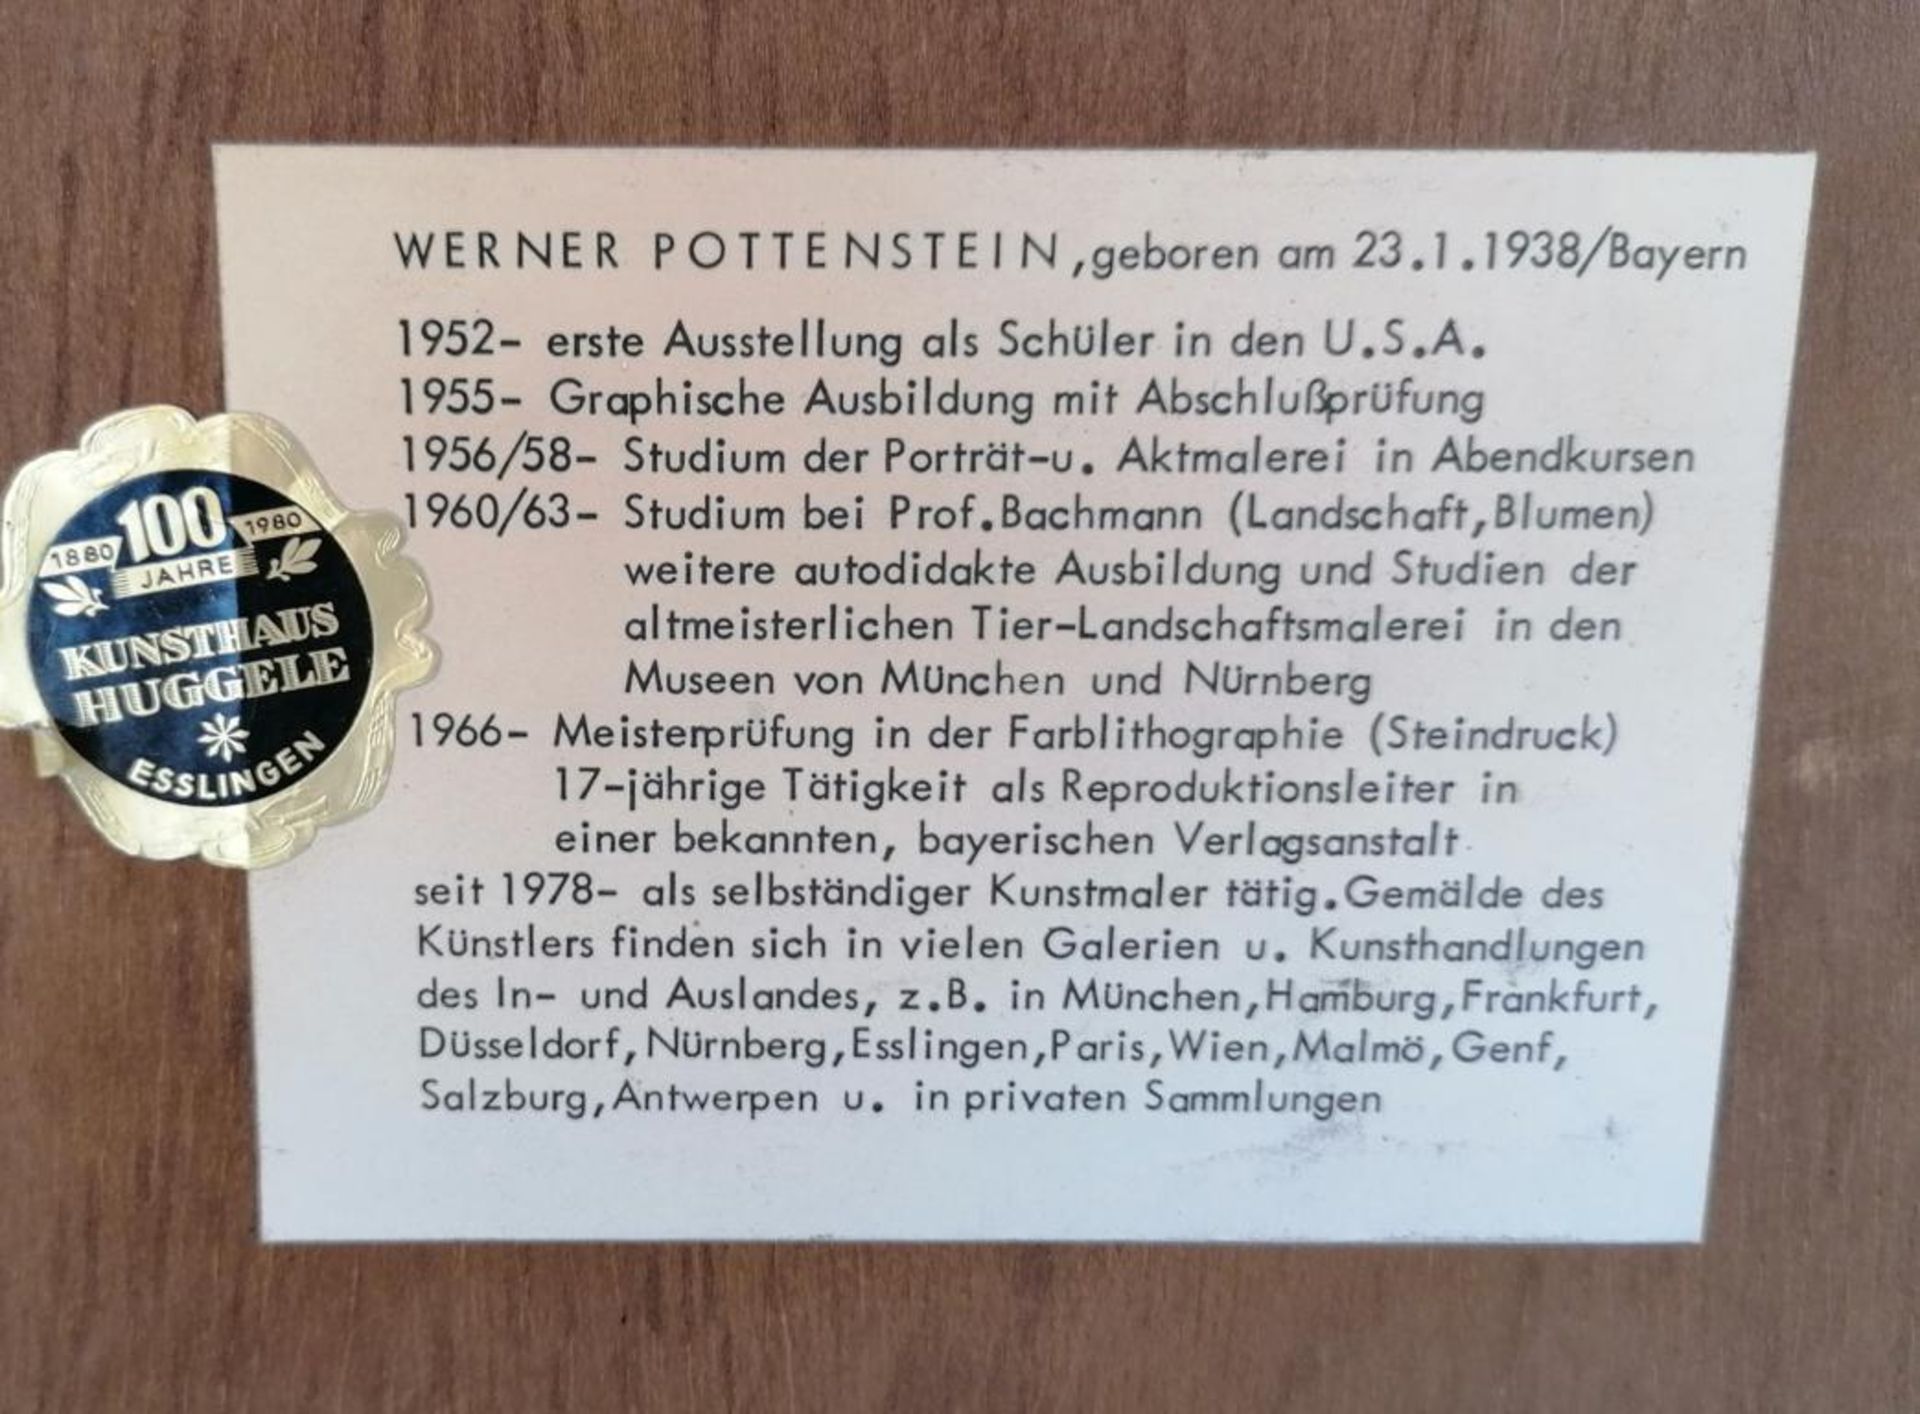 Werner Pottenstein (1938/Bayern) - Image 5 of 5